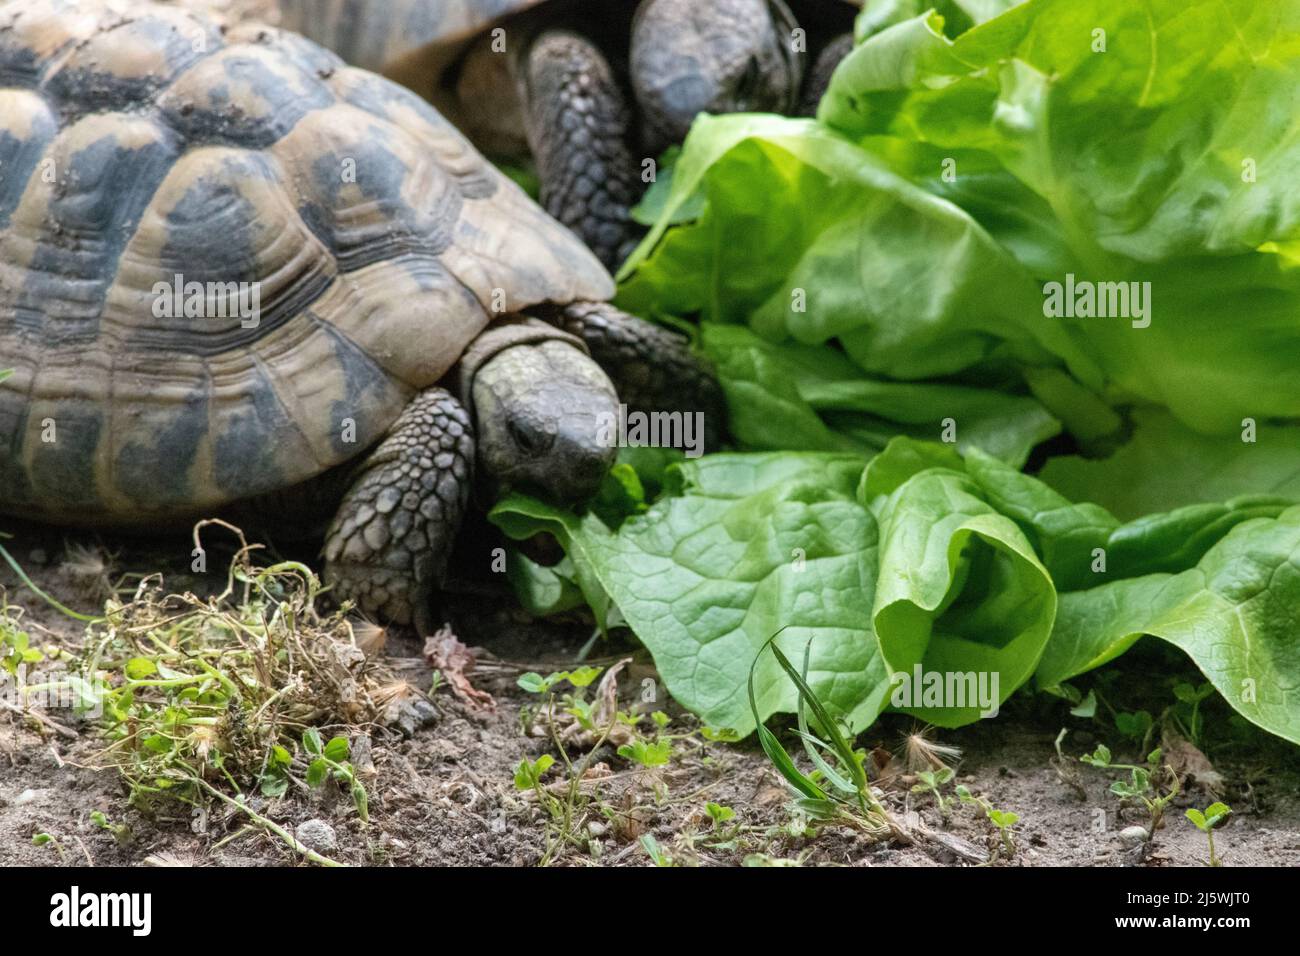 La tortue grecque (Testudo graeca), également connue sous le nom de tortue à éperon,] est une espèce de tortue de la famille des Testudinidae. Elle l'a montré Banque D'Images